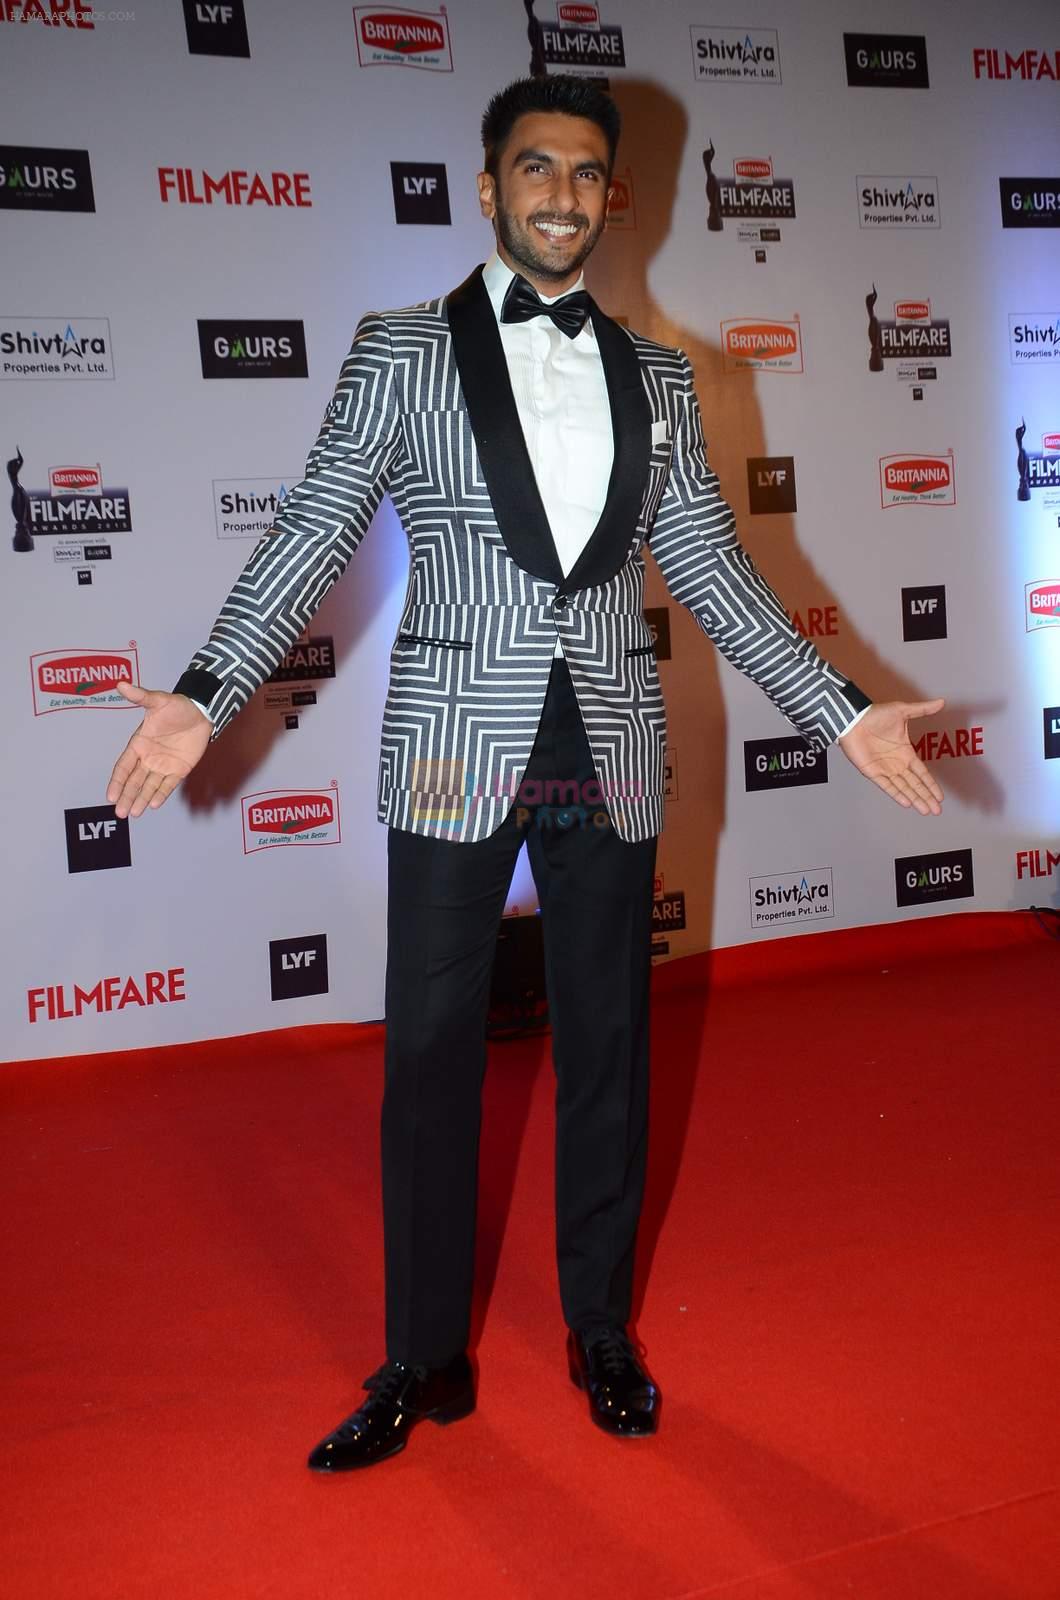 Ranveer Singh at Filmfare Awards 2016 on 15th Jan 2016